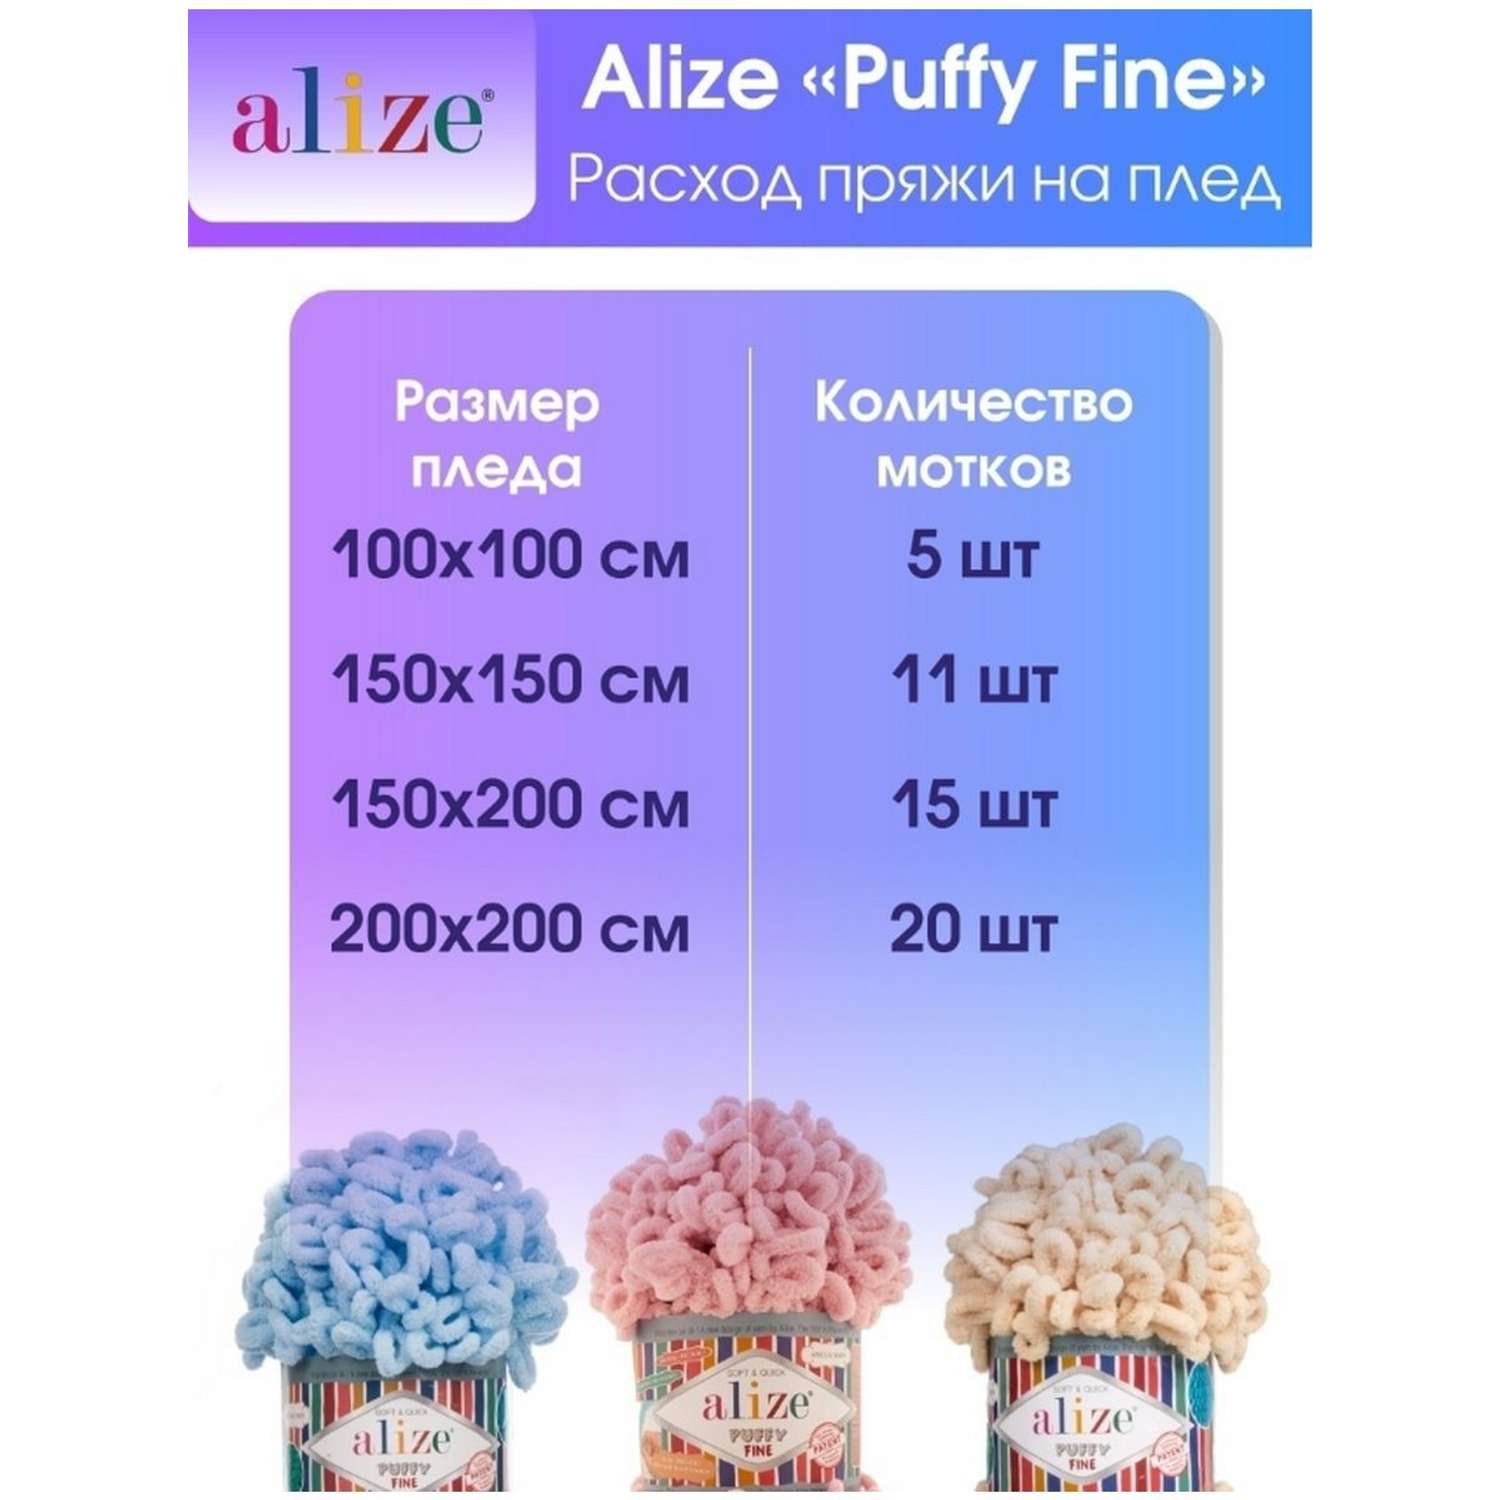 Пряжа для вязания Alize puffy fine 100 г 14.5 м микрополиэстер фантазийная мягкая 93 петроль 5 мотков - фото 7